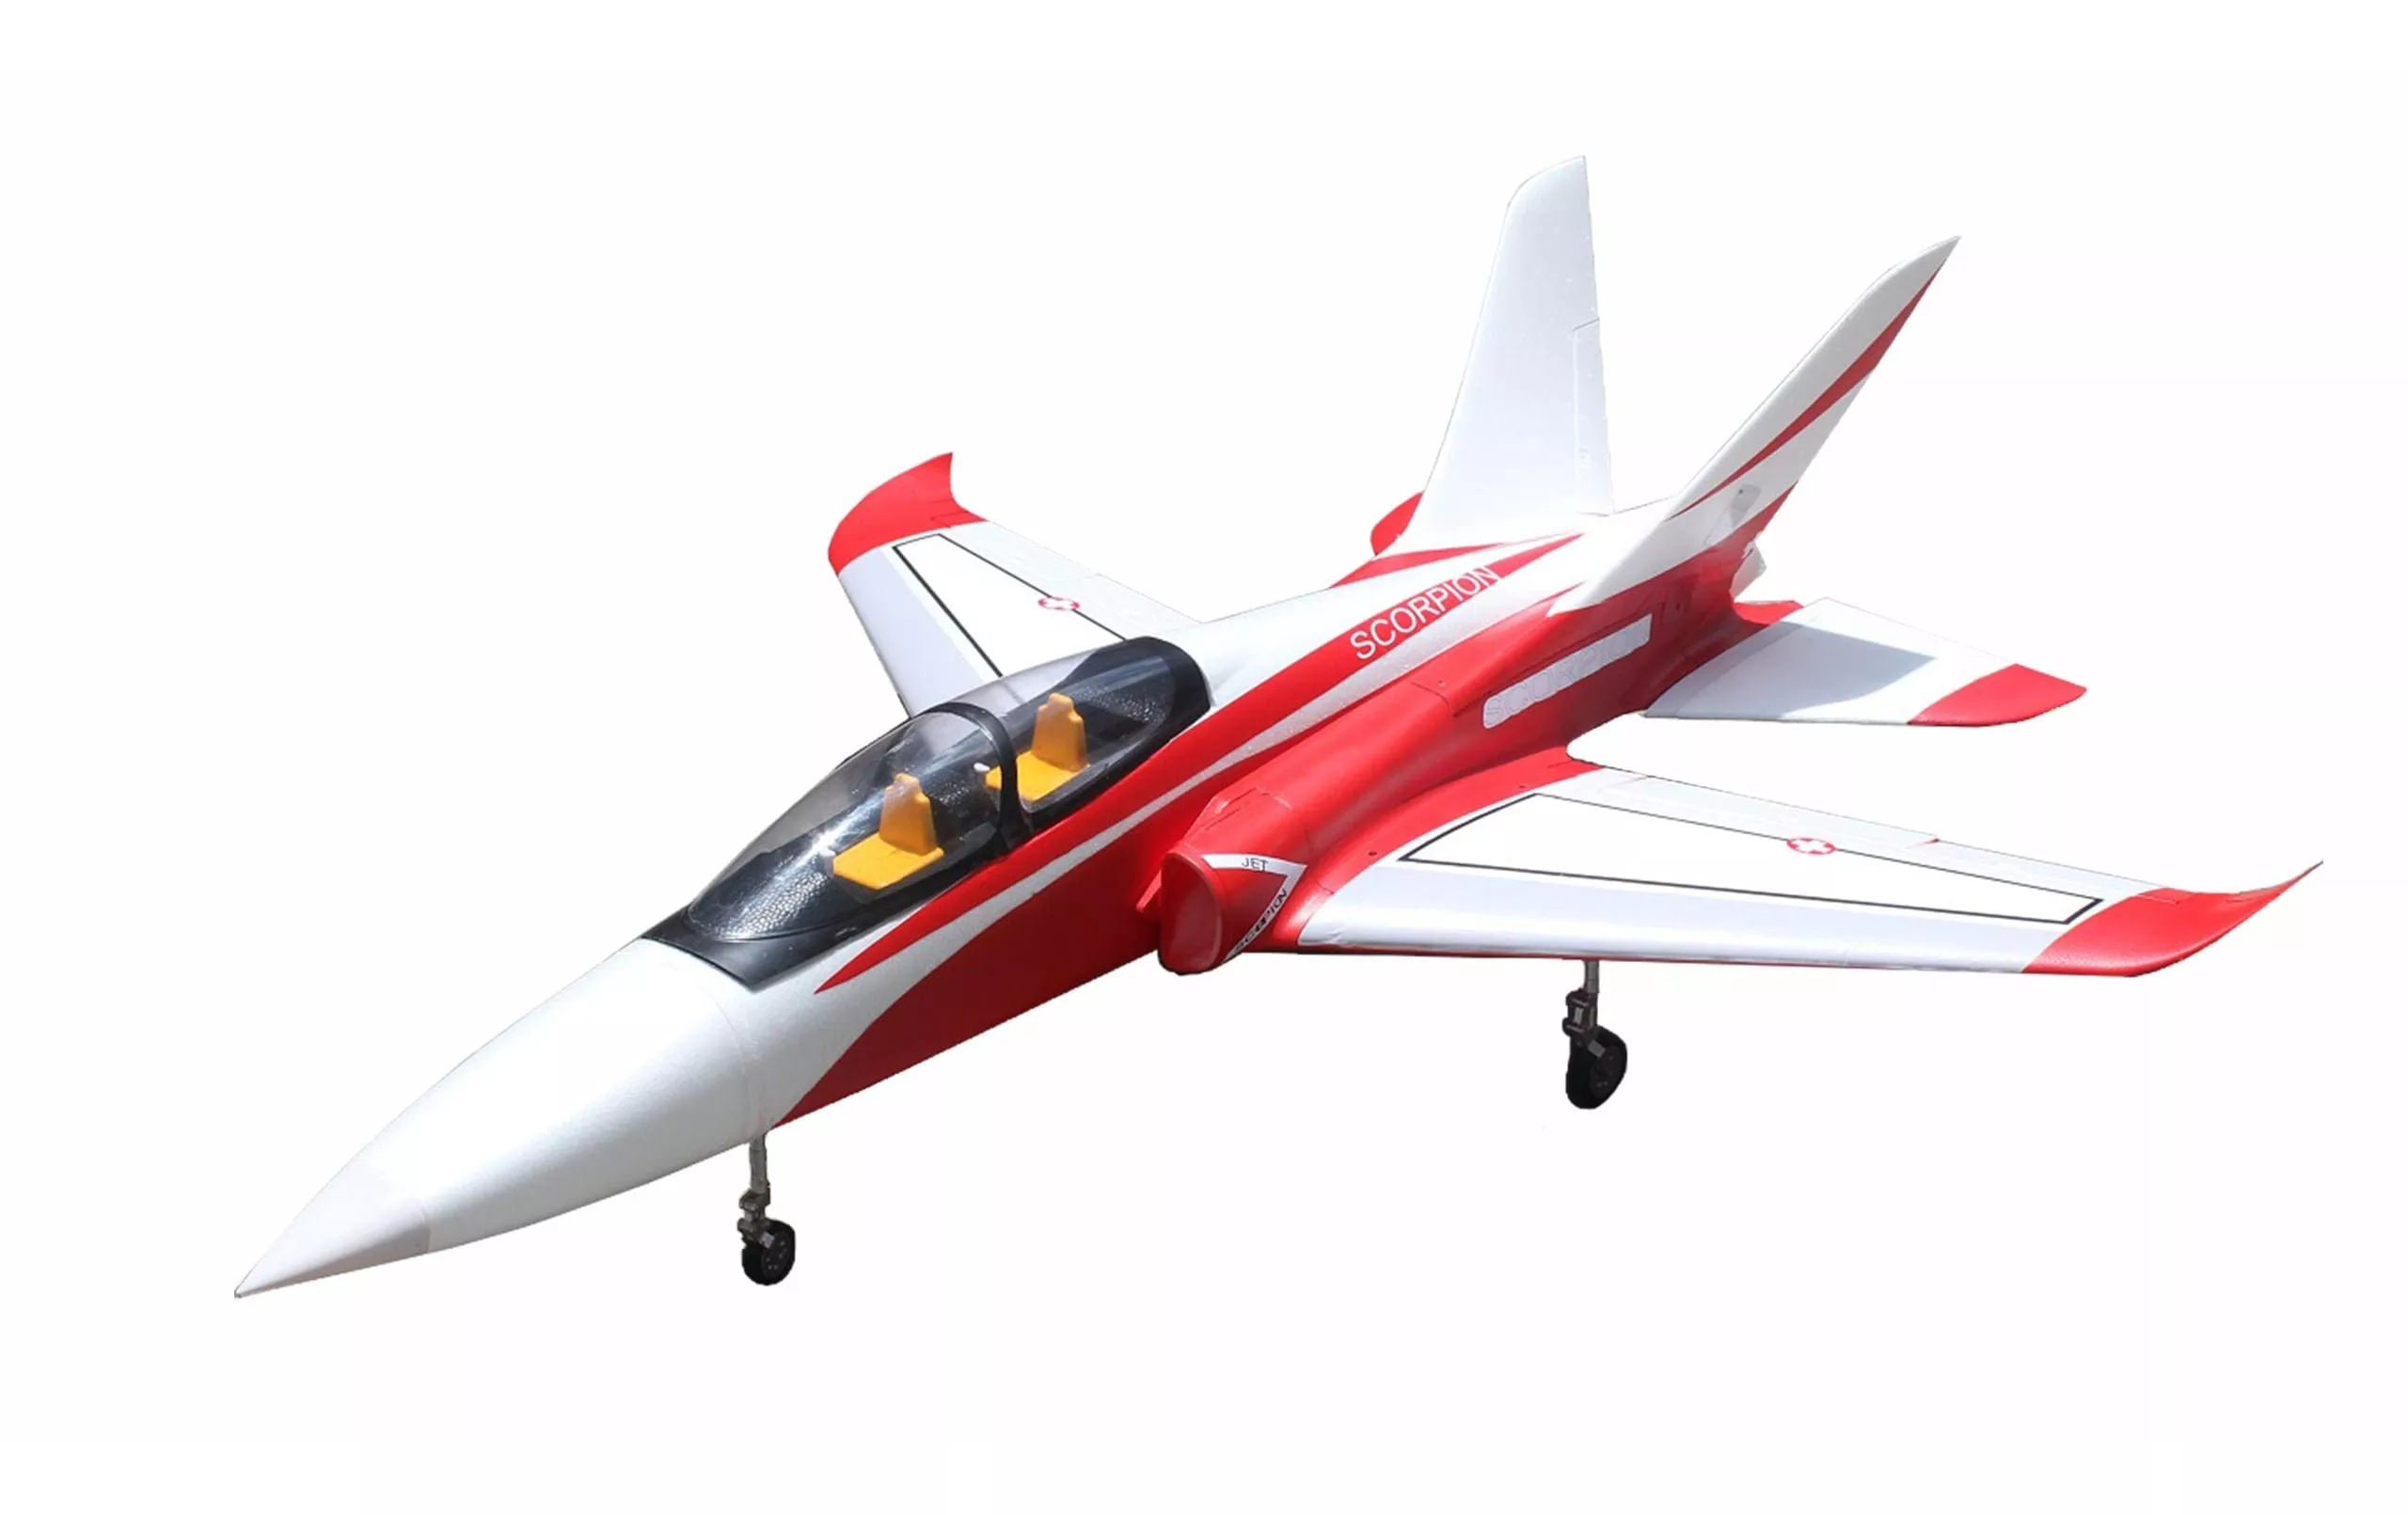 Girante Jet Super Scorpion 6-8S Rosso/Bianco PNP